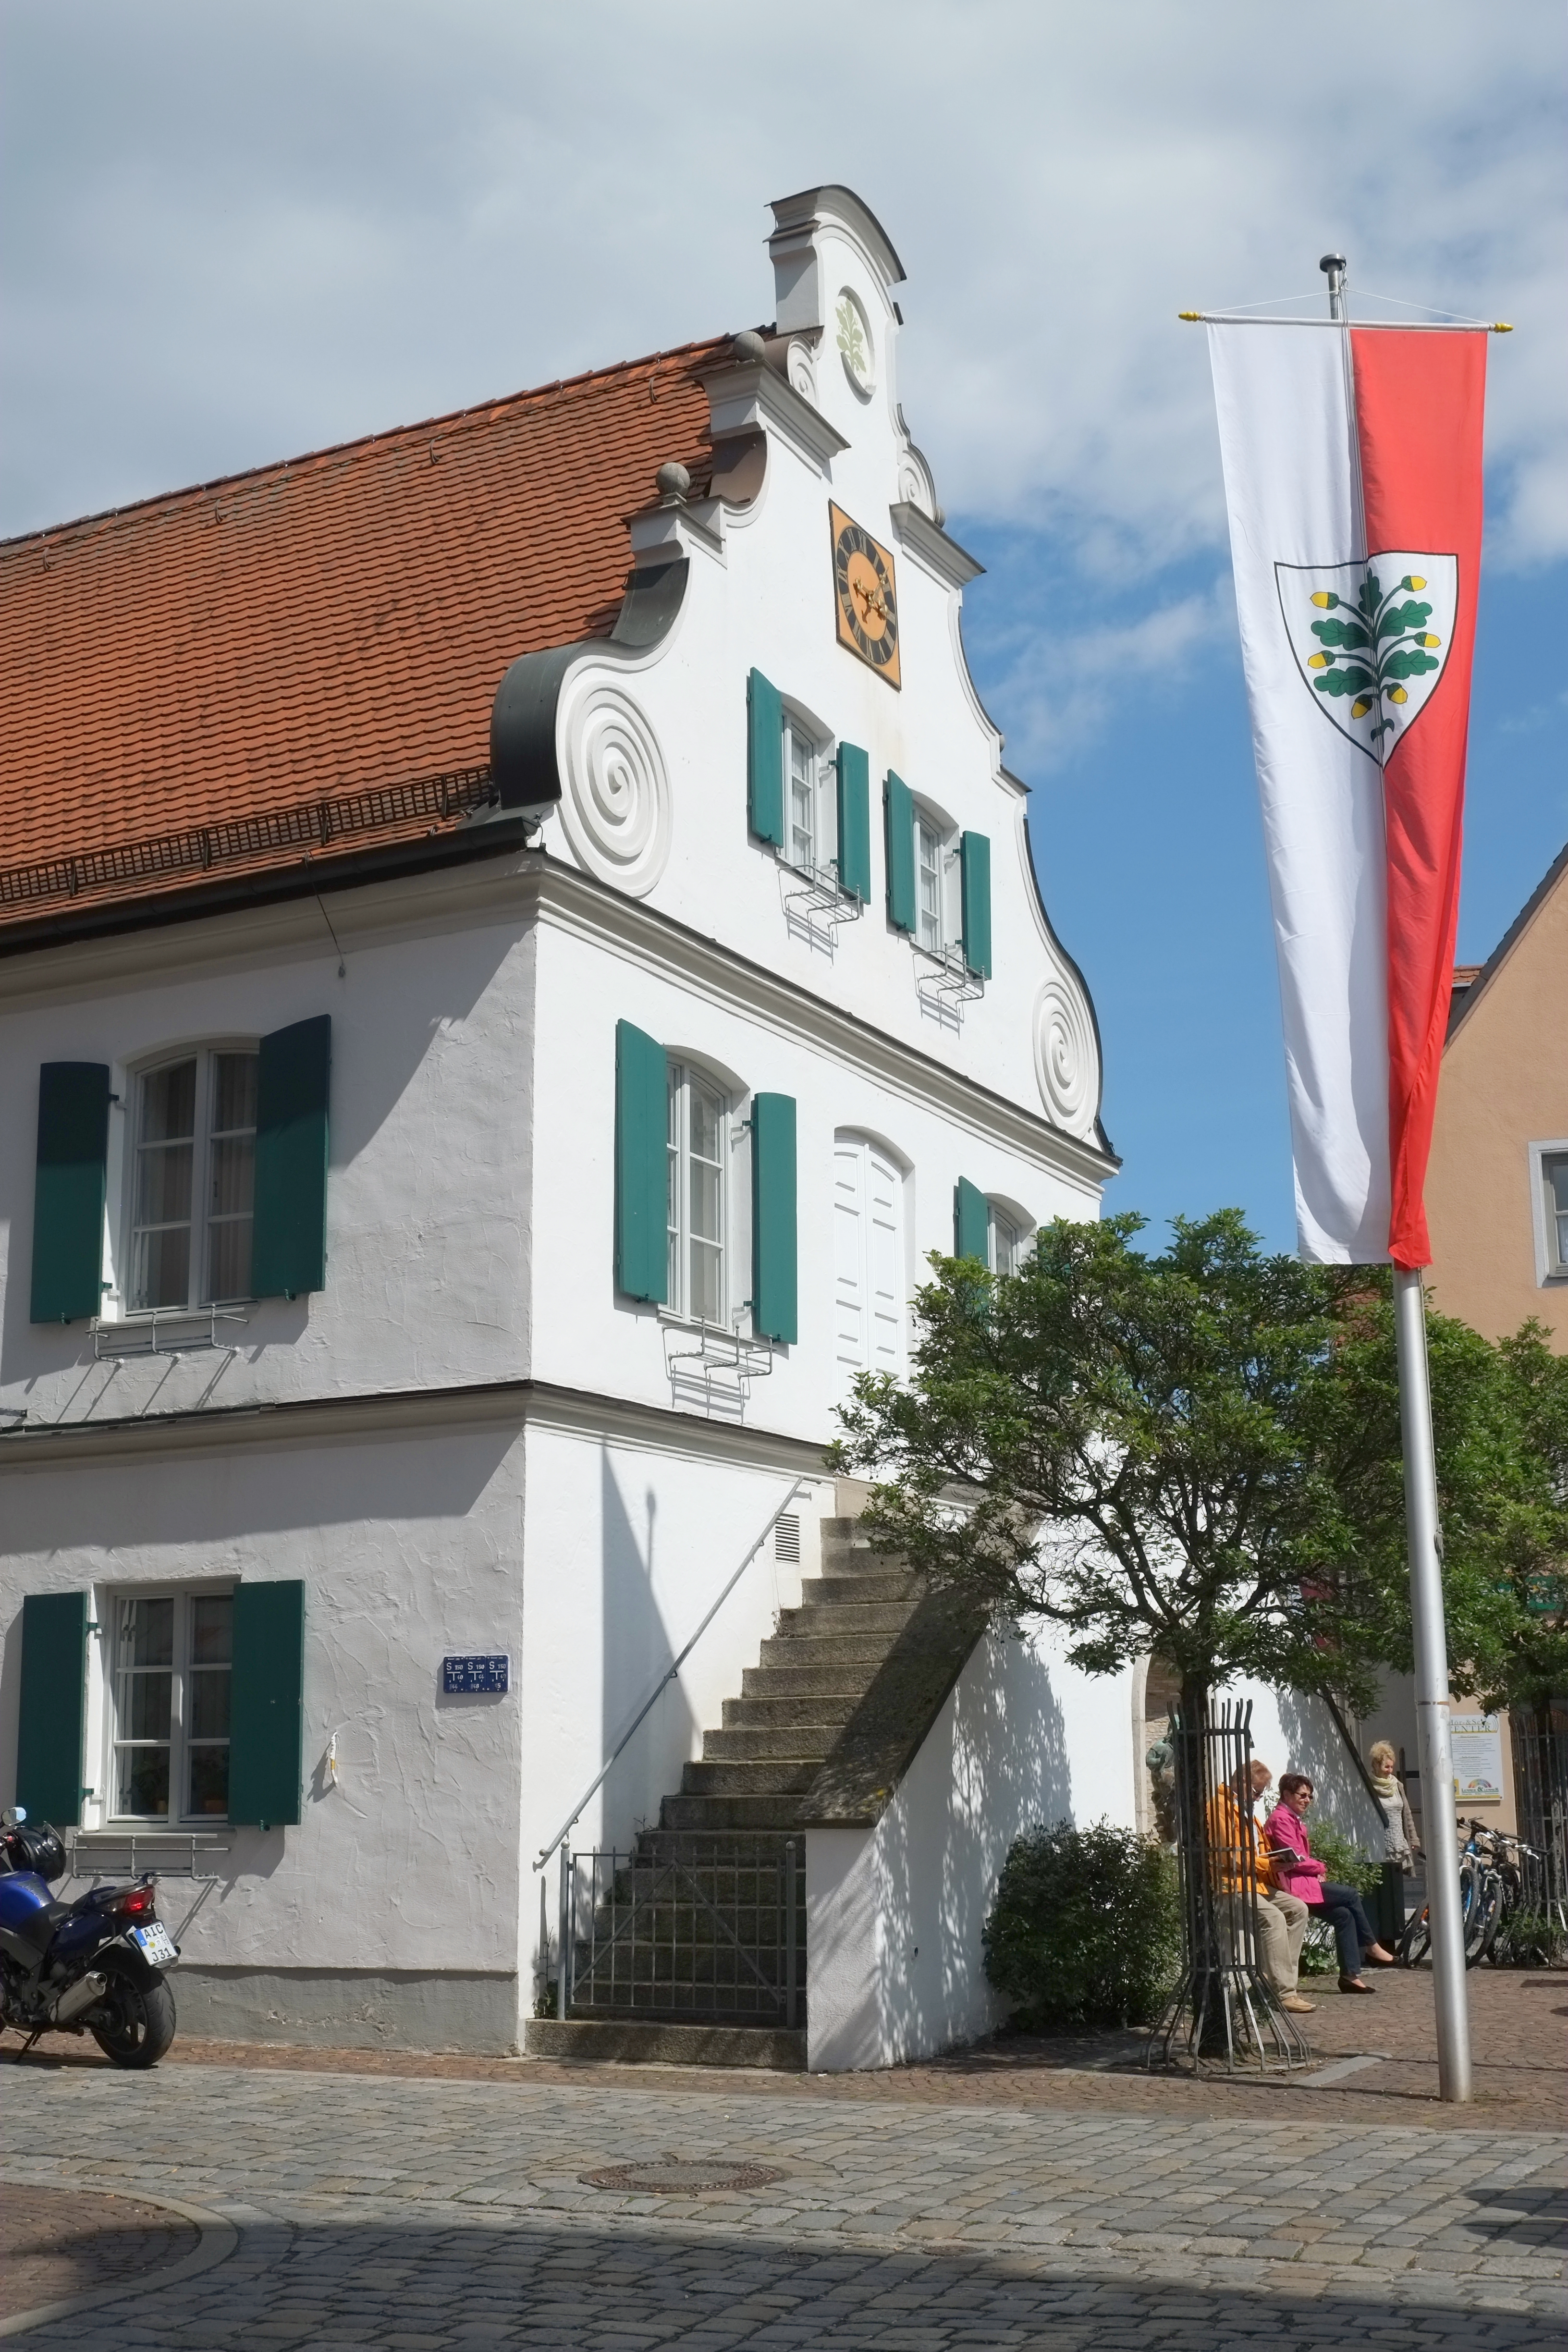 Rathaus in Aichach im Landkreis Friedberg-Aichach (Bayern, Deutschland)